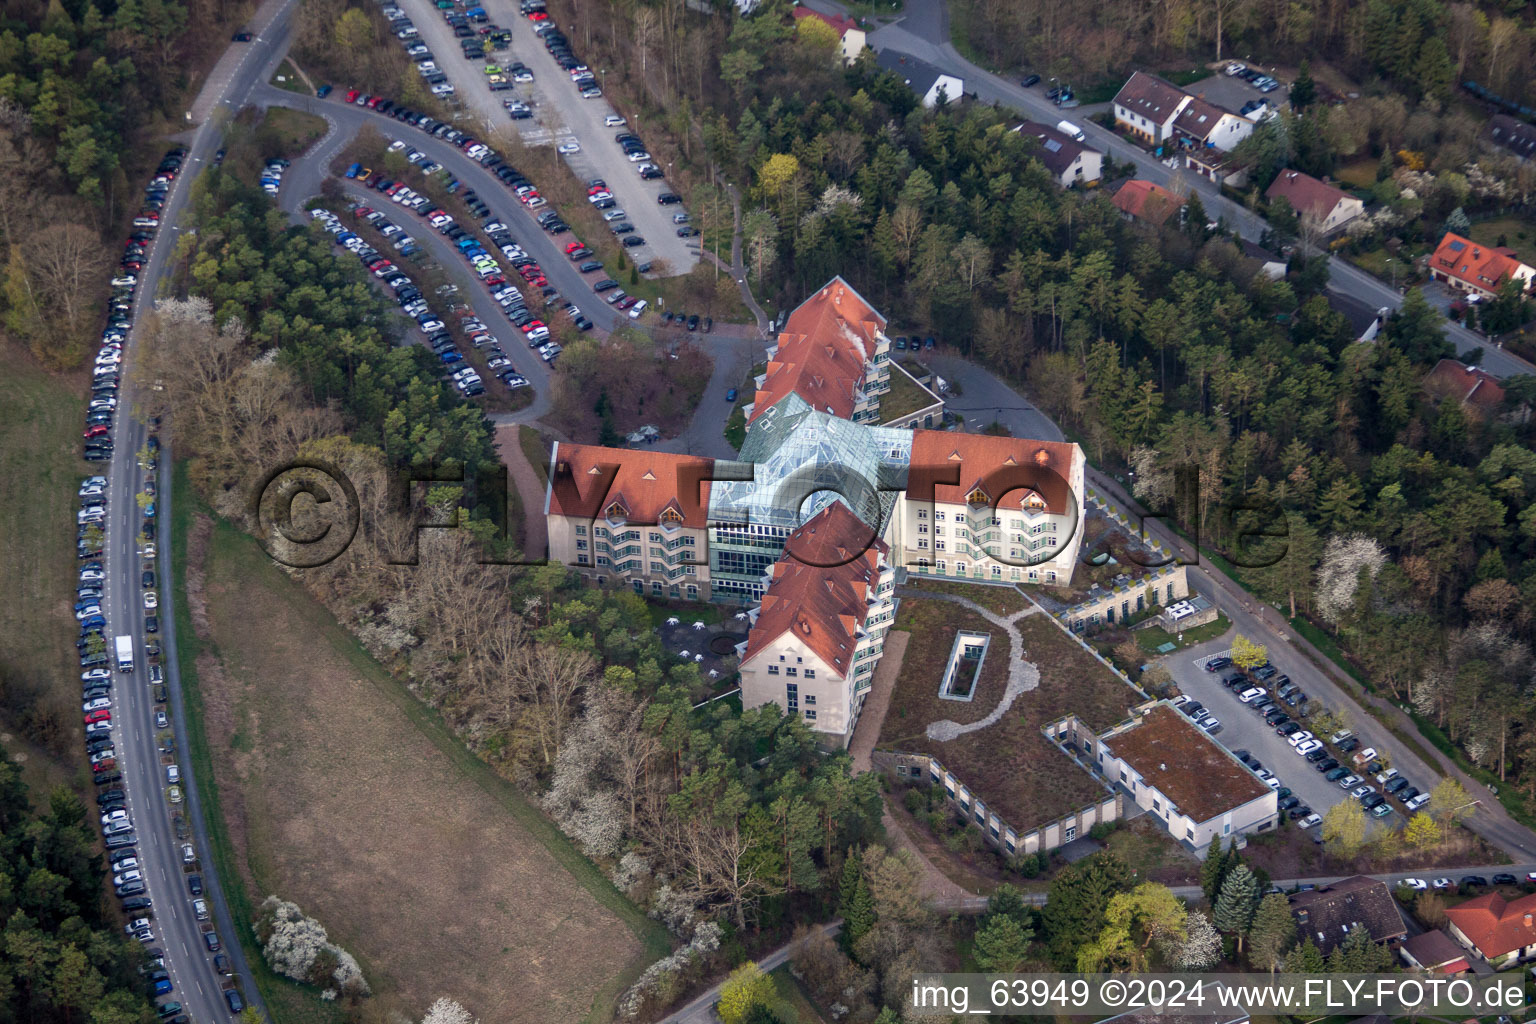 Schrägluftbild von Klinikgelände des Krankenhauses Neurologische Klinik Bad Neustadt an der Saale in Bad Neustadt an der Saale im Bundesland Bayern, Deutschland